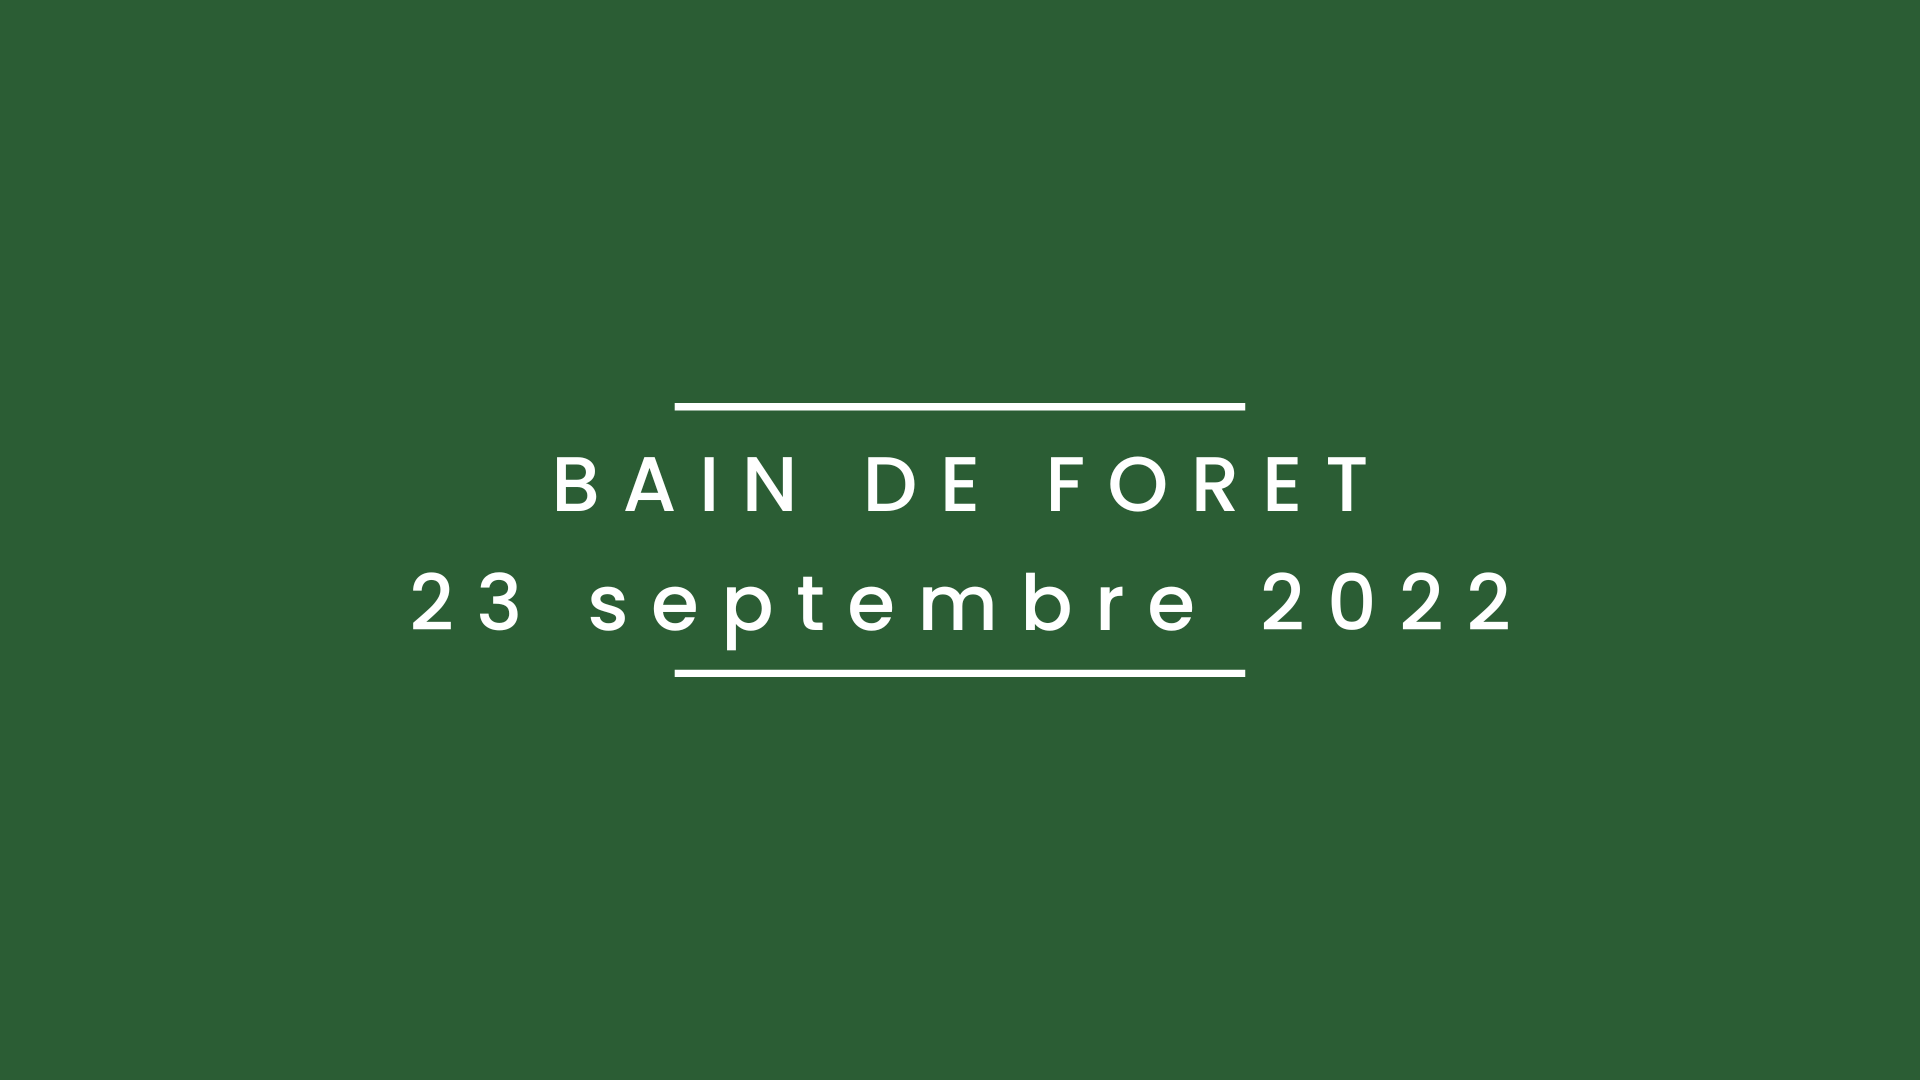 Bain de forêt 23 septembre 2022